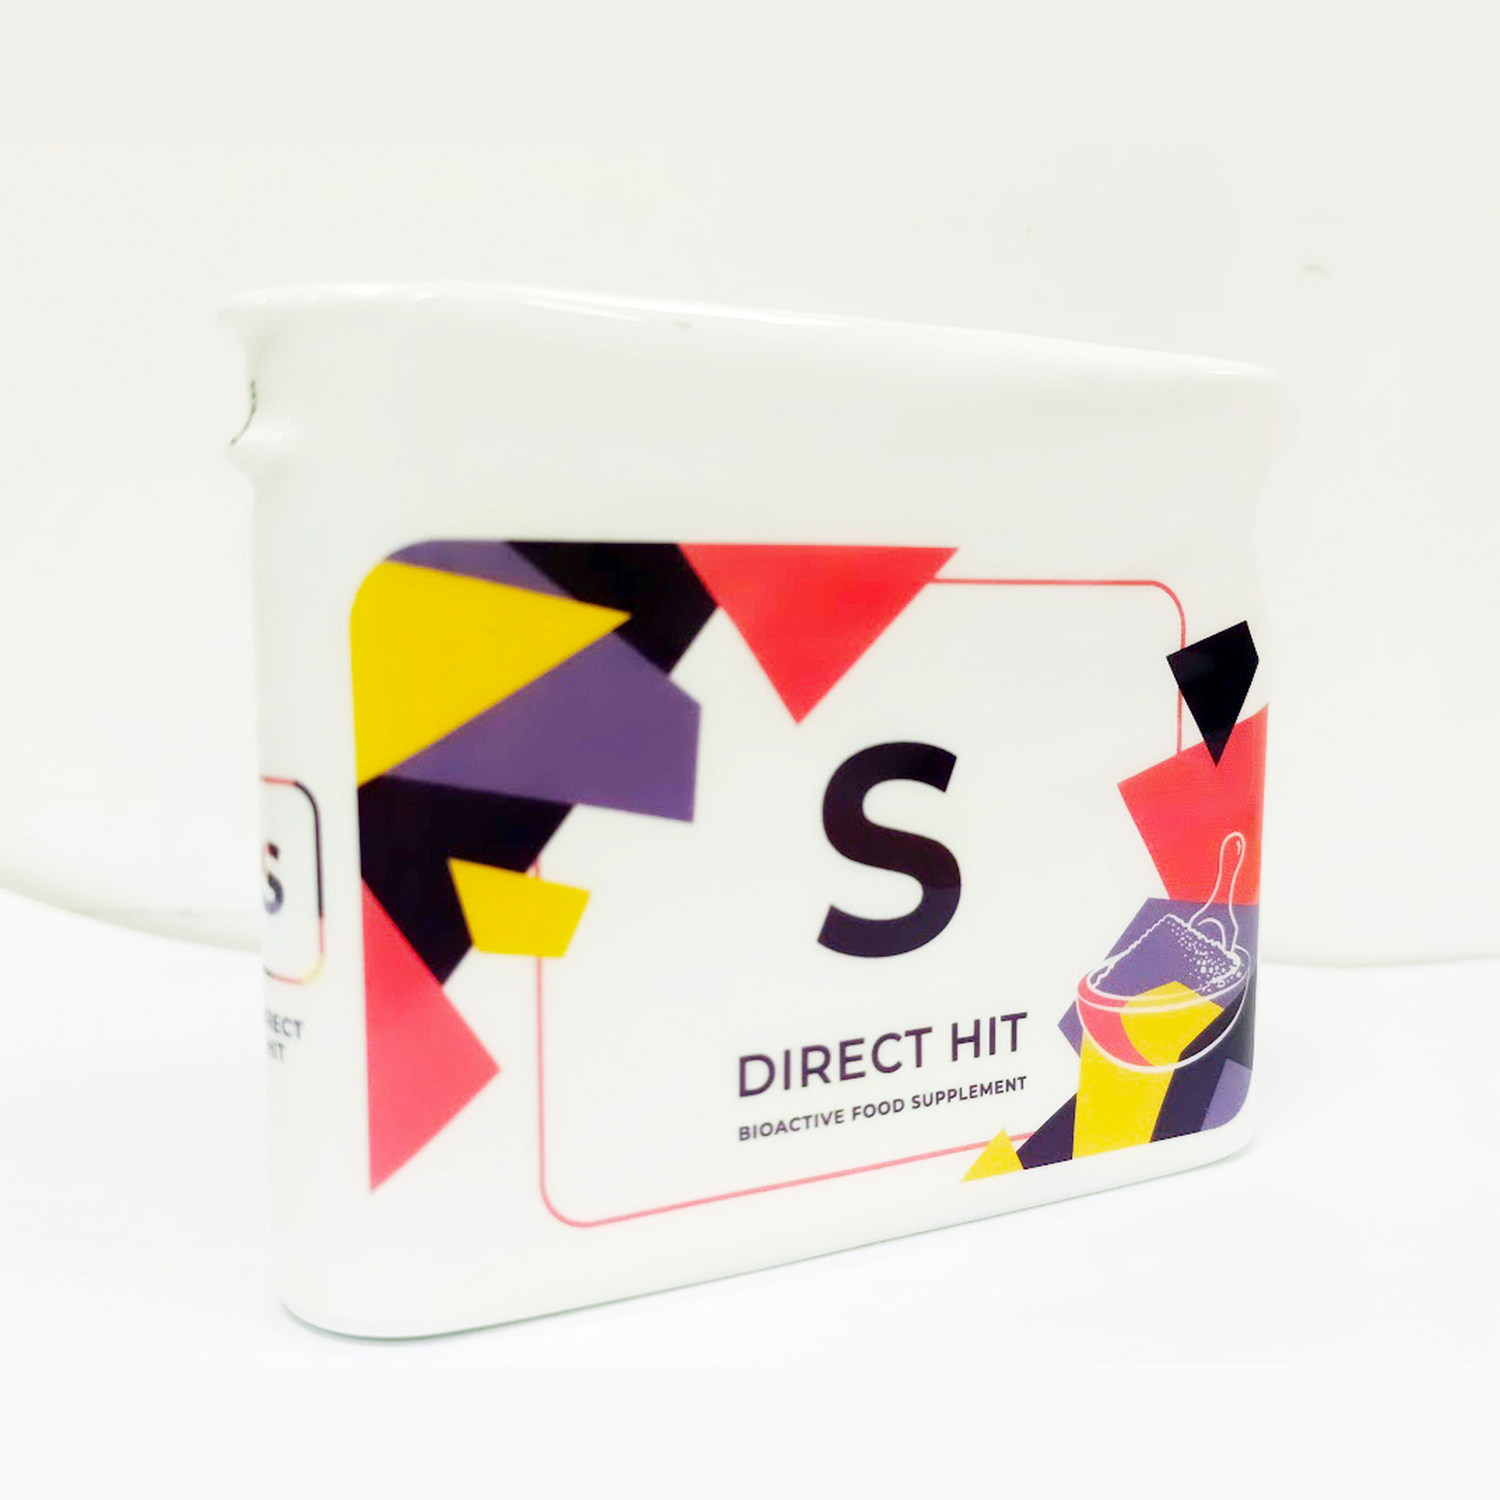 Sessia - Project V - Thực phẩm sức khoẻ Direct Hit S (Phiên bản giới hạn)